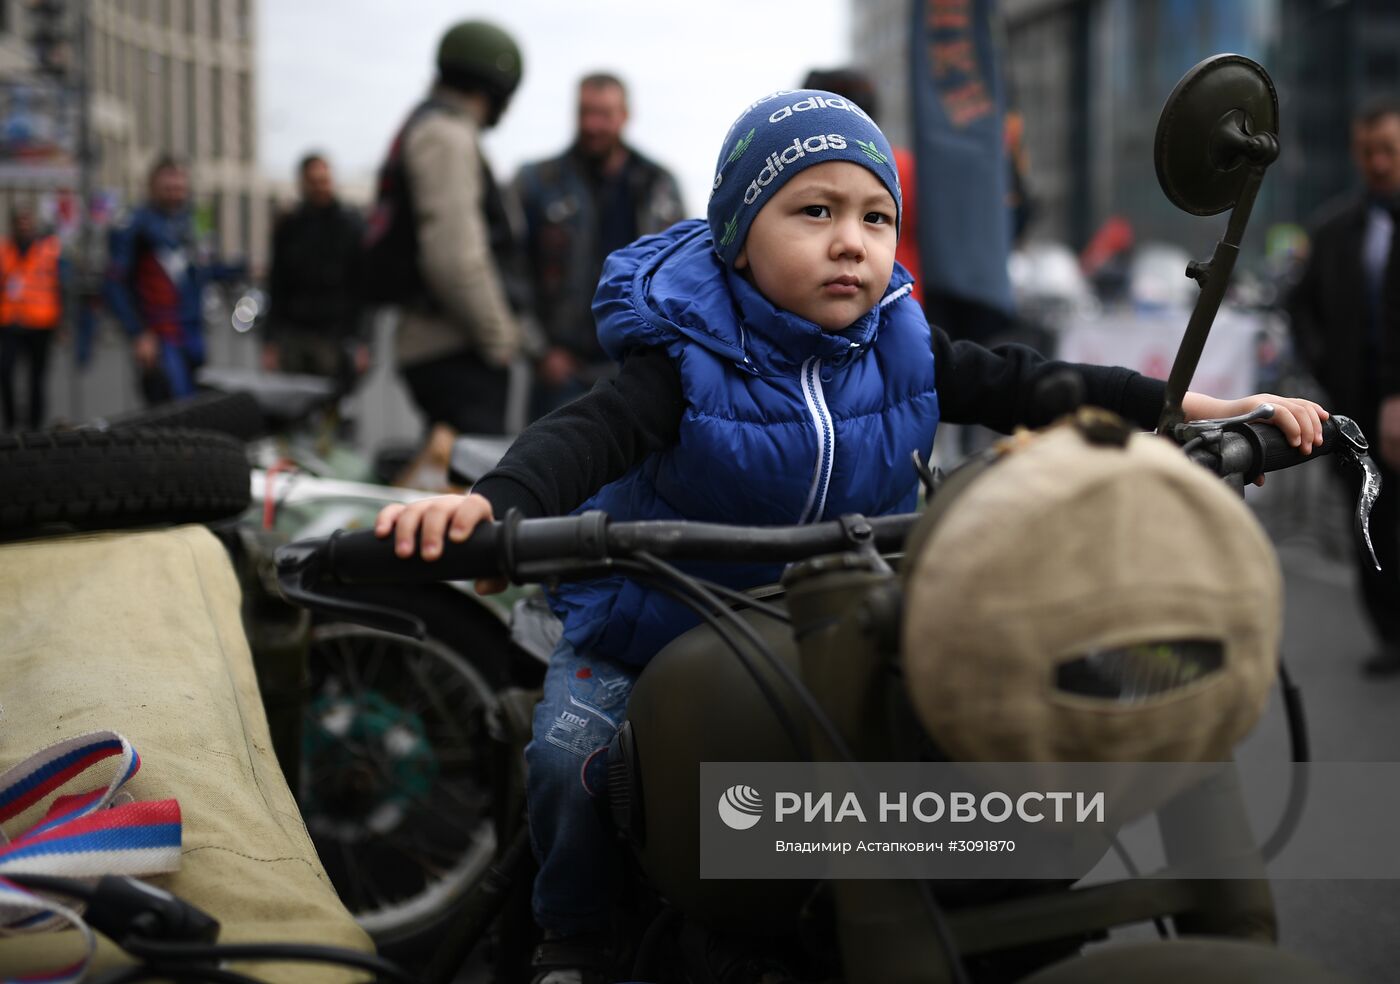 Мотофестиваль "Москва – город для мотоциклистов"